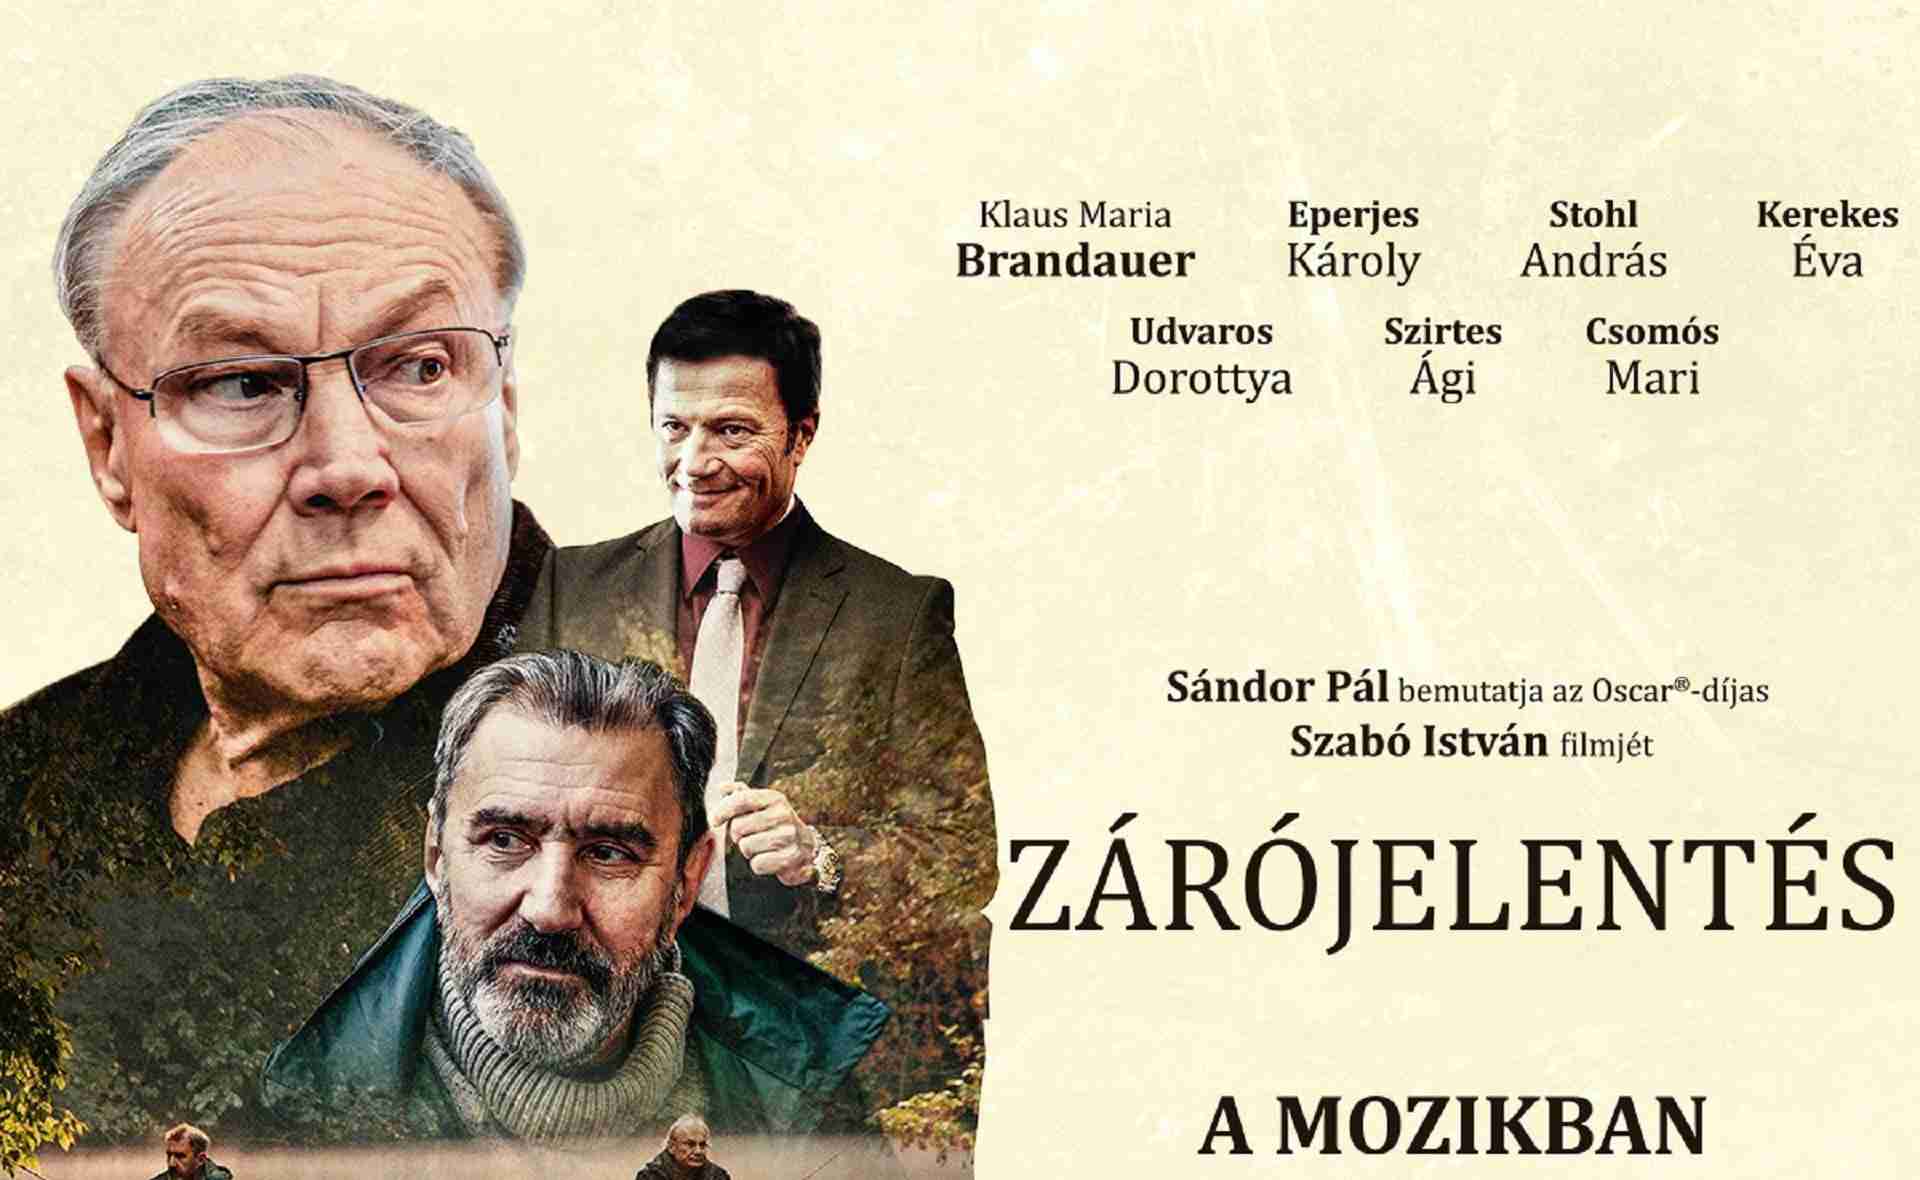 Final Report (Zárójelentés) by István Szabó - Movie Screening